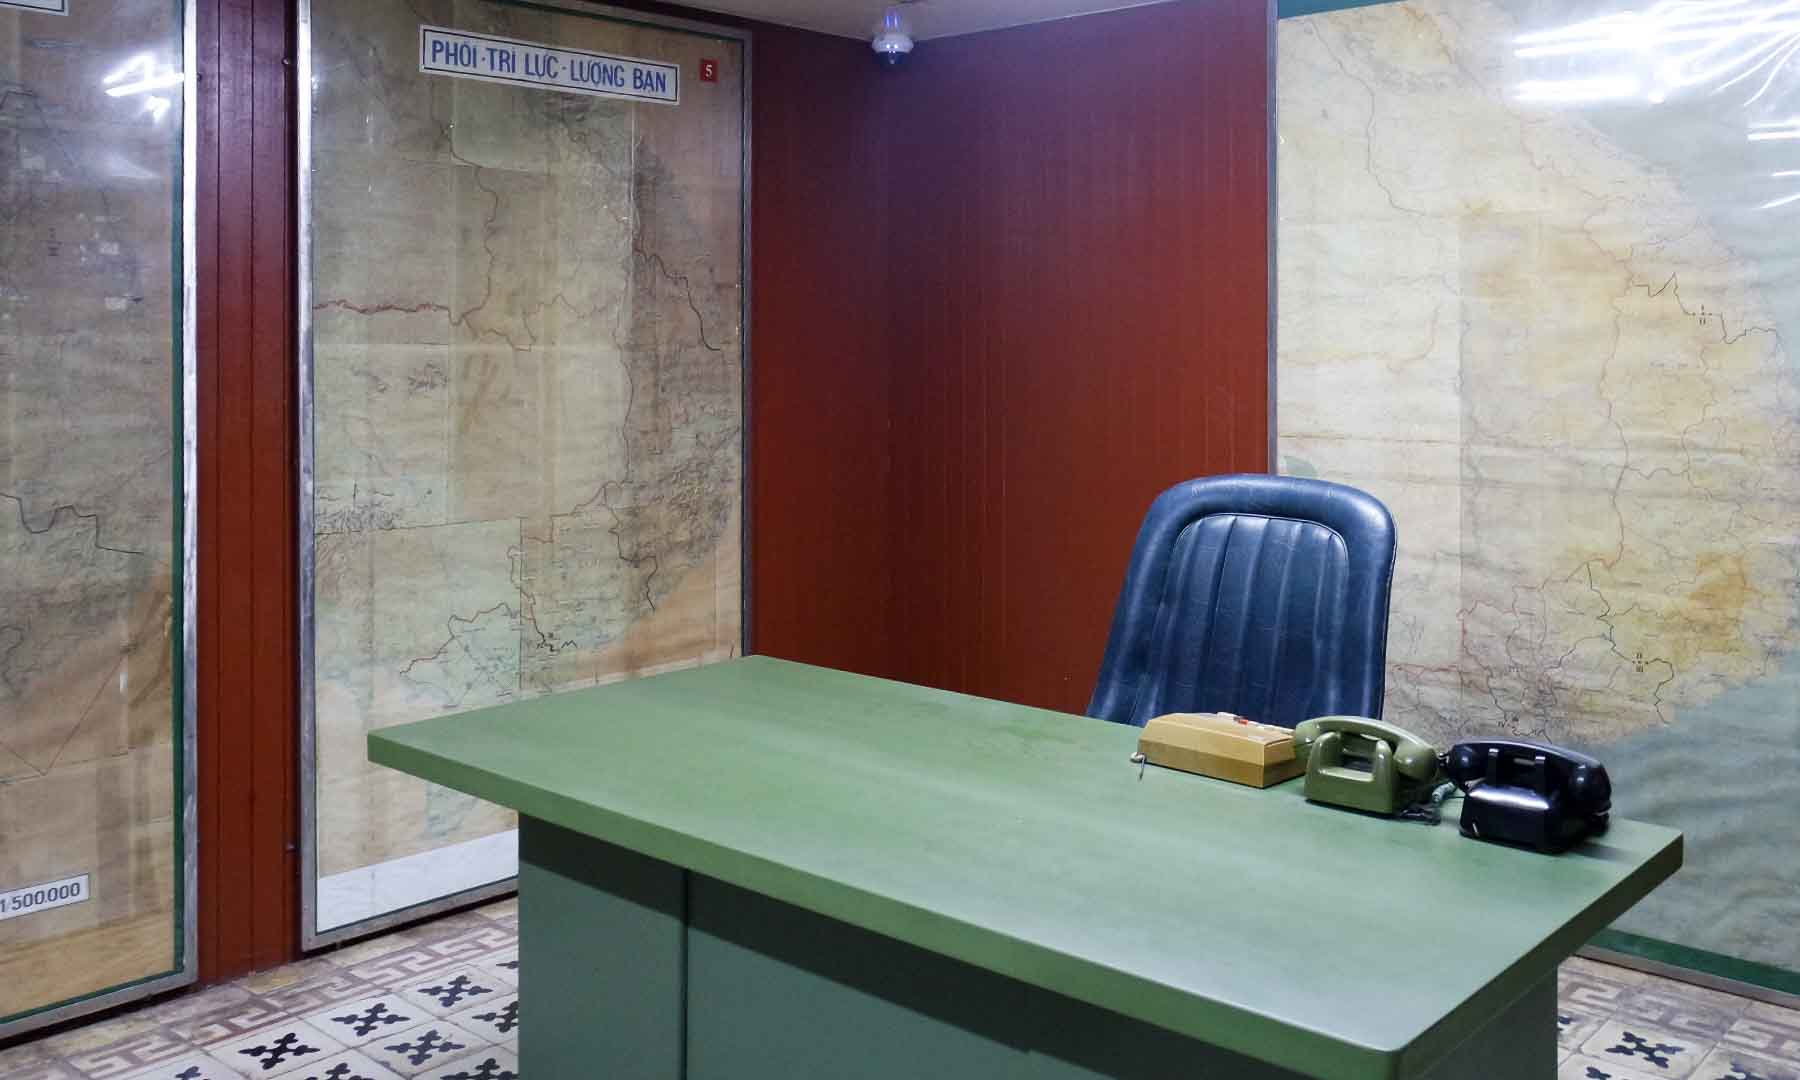 In the bunker: President's War Room